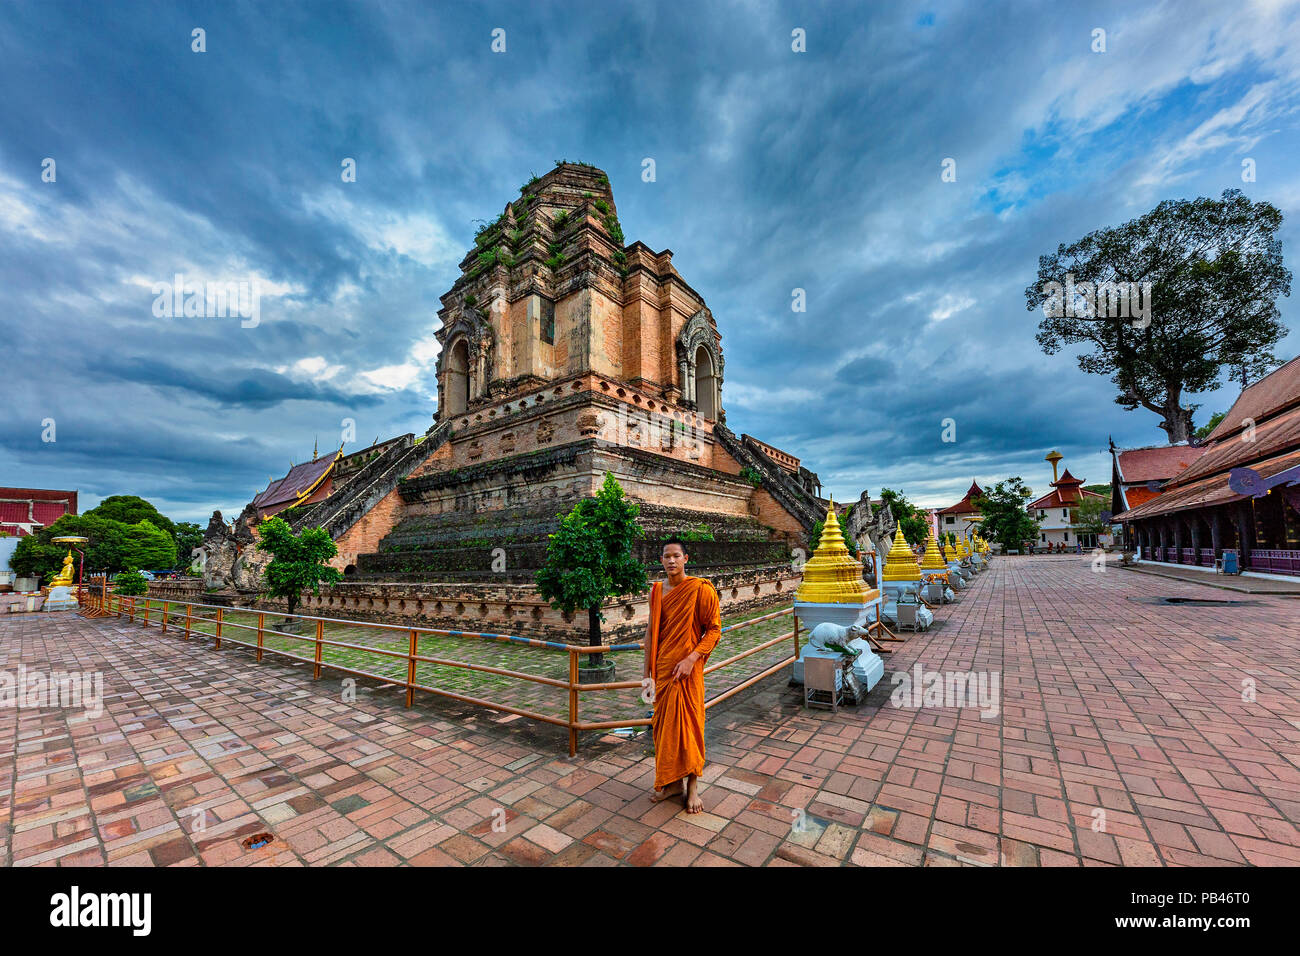 Buddhistischer Mönch schaut mich an die Überreste der Tempel Wat Chedi Luang, in Chiang Mai, Thailand bekannt. Stockfoto